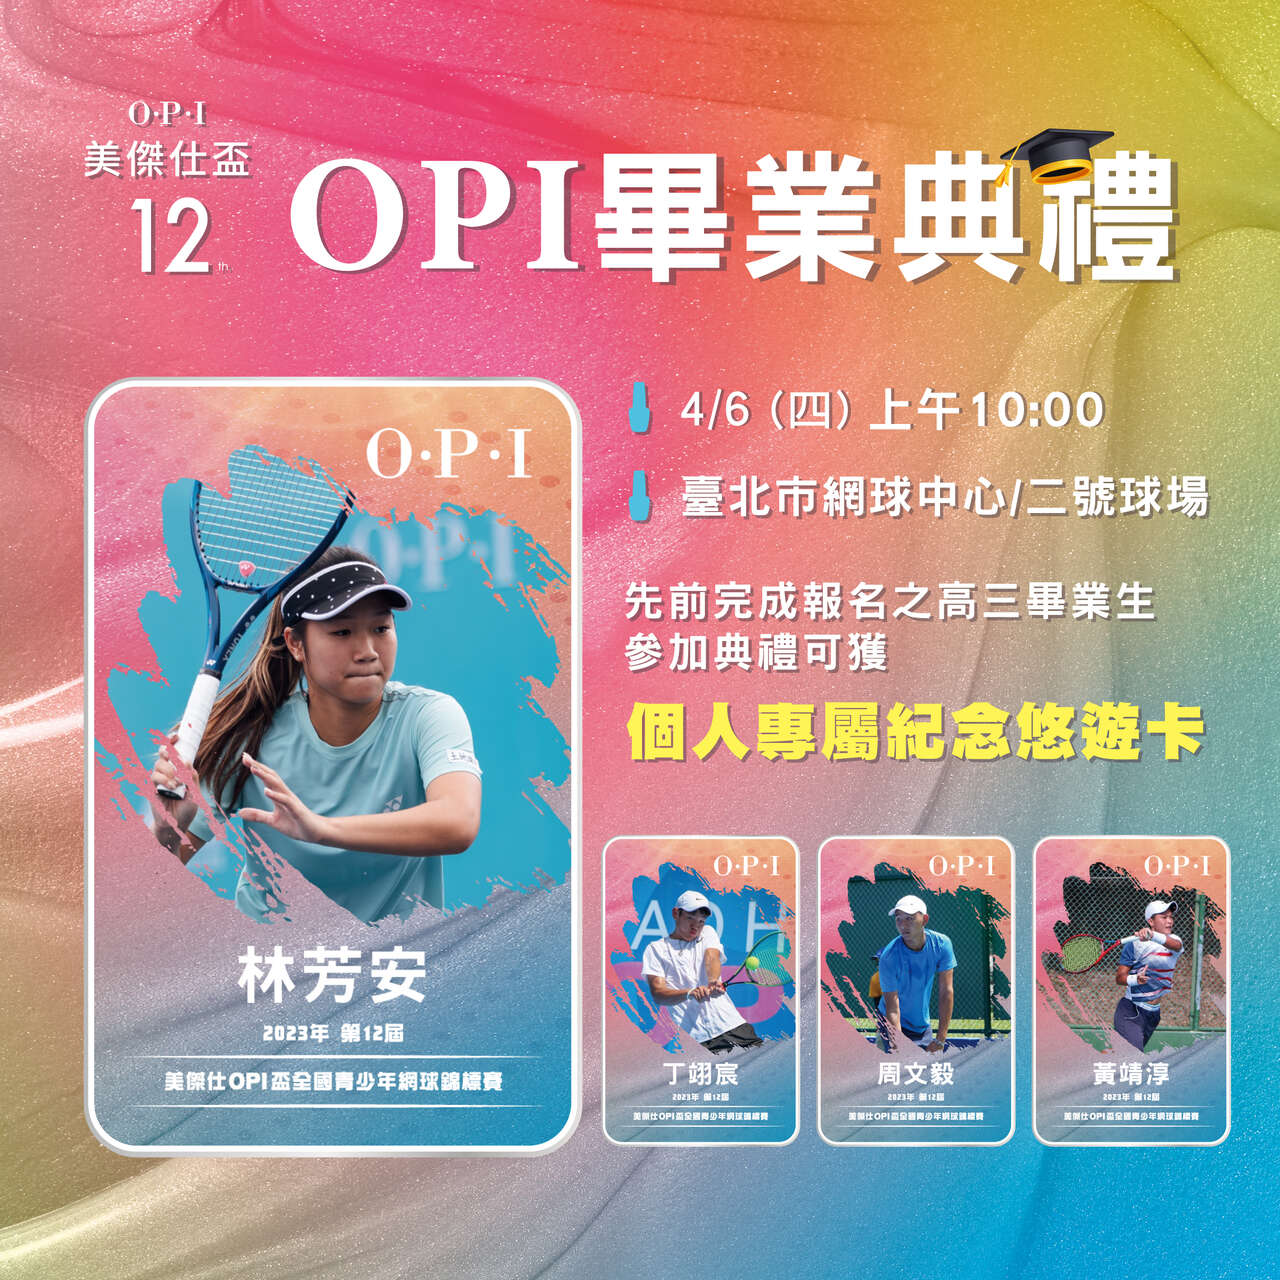 賽會舉辦OPI畢業典禮高三生可獲個人專屬紀念悠遊卡。海碩整合行銷提供